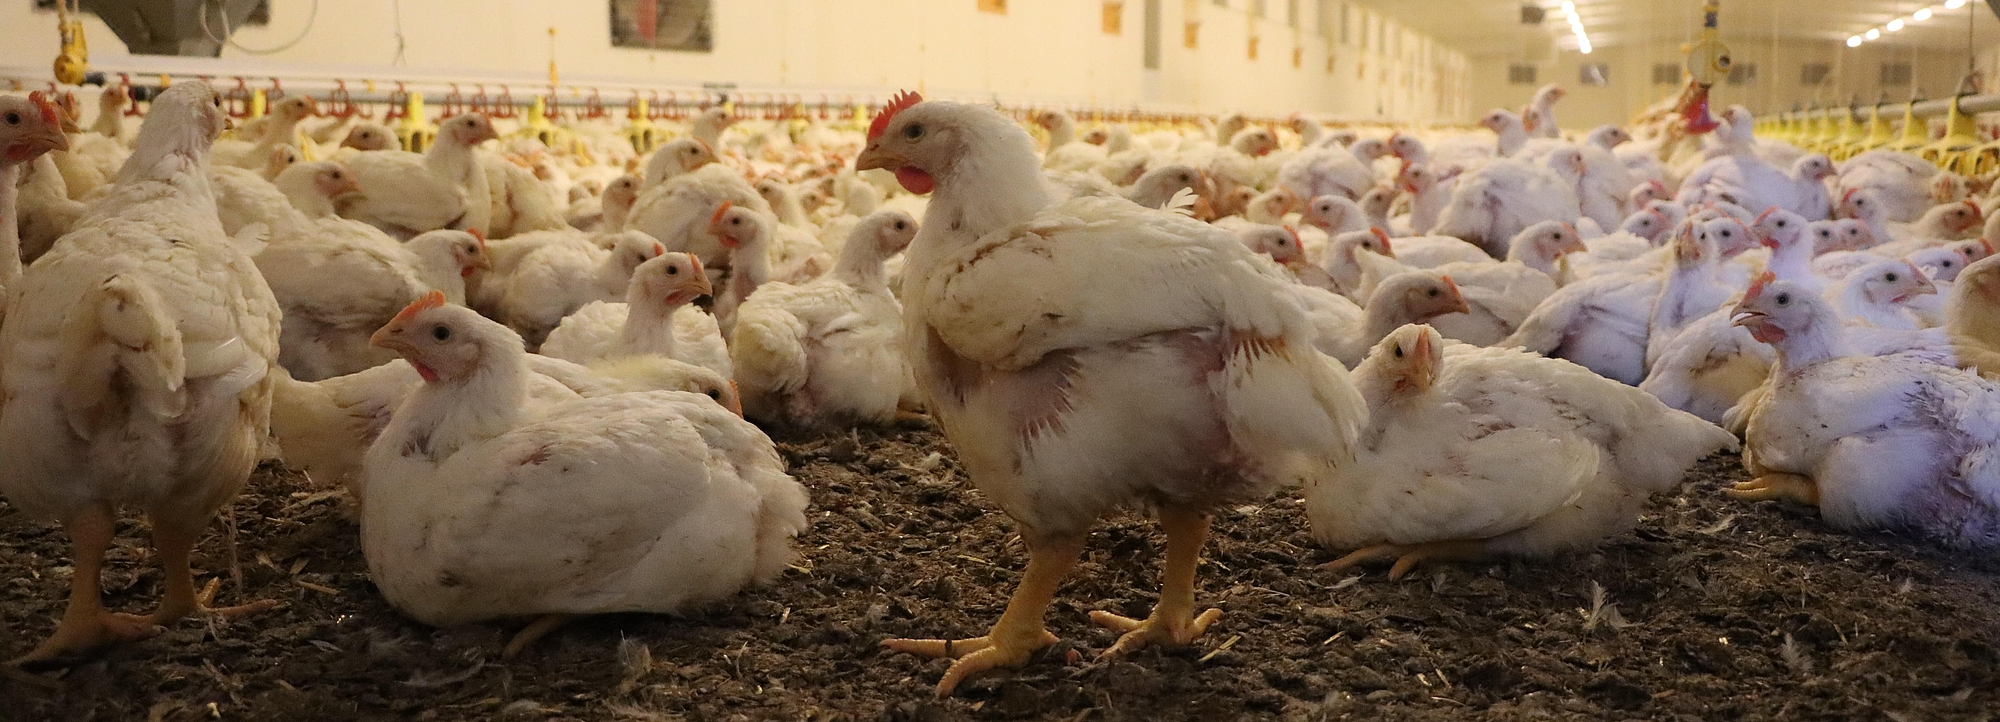 Bild zeigt eine Masthaltung von Hühnern